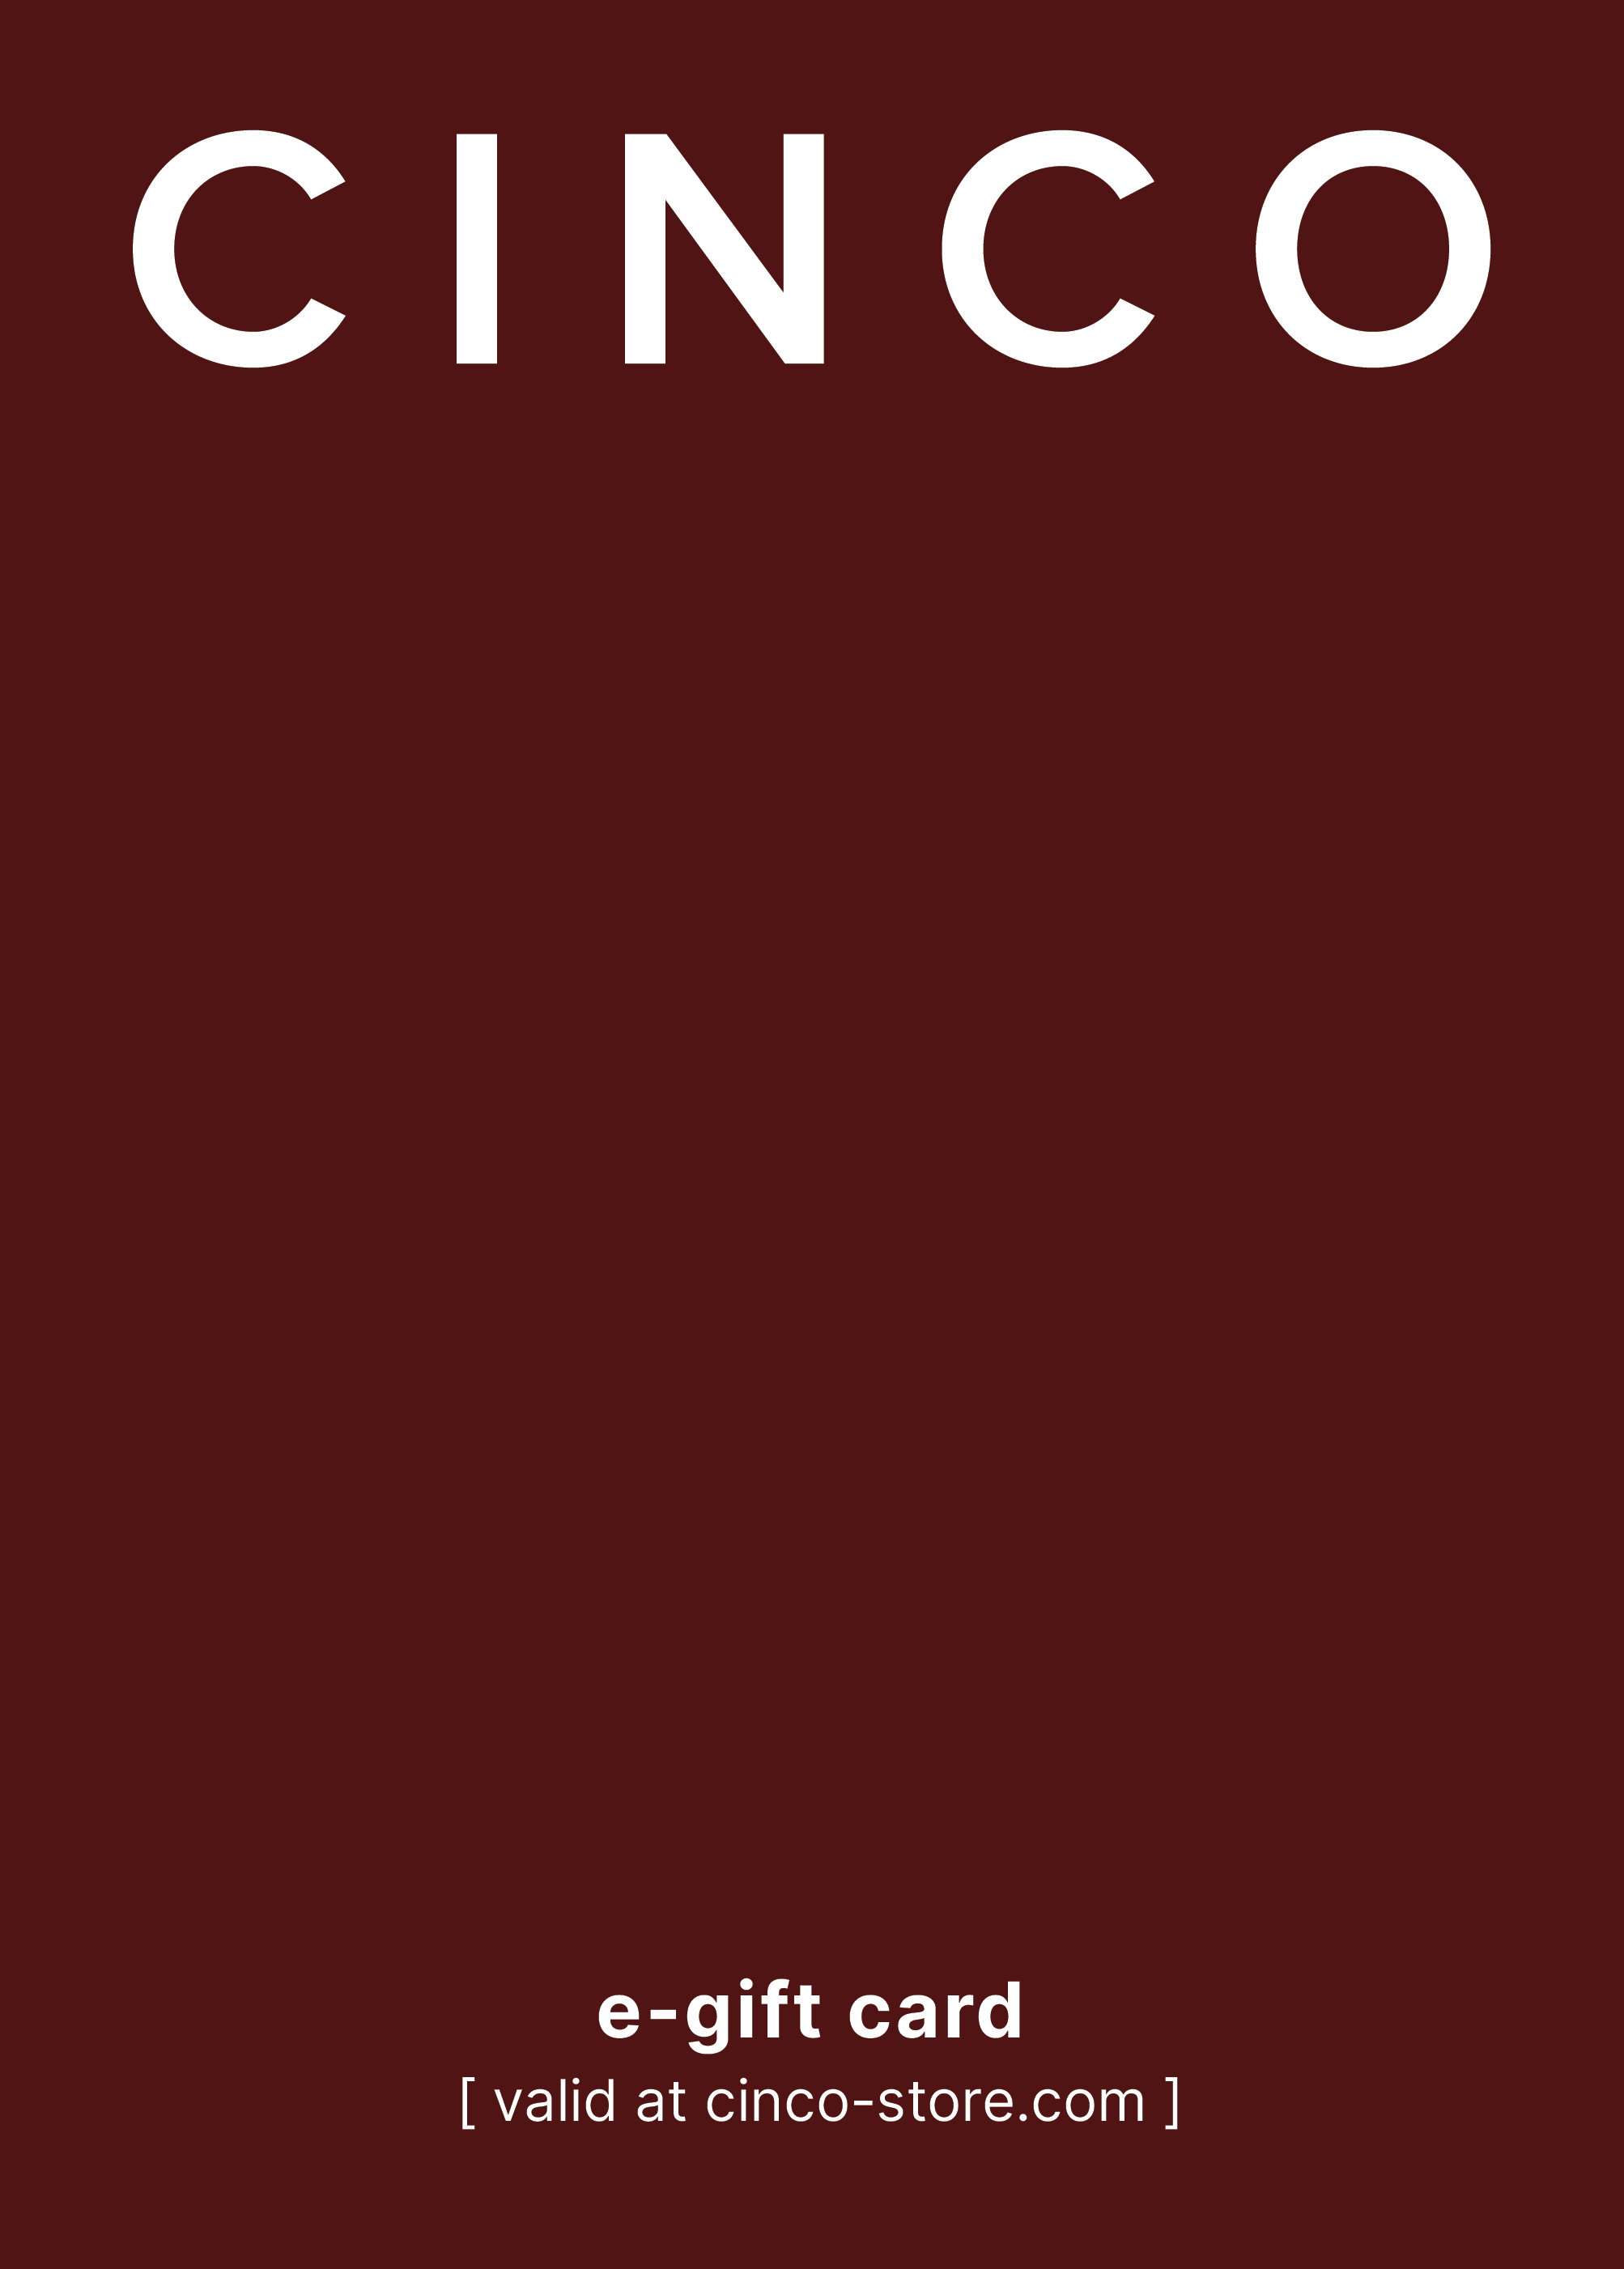 CINCO e-gift card